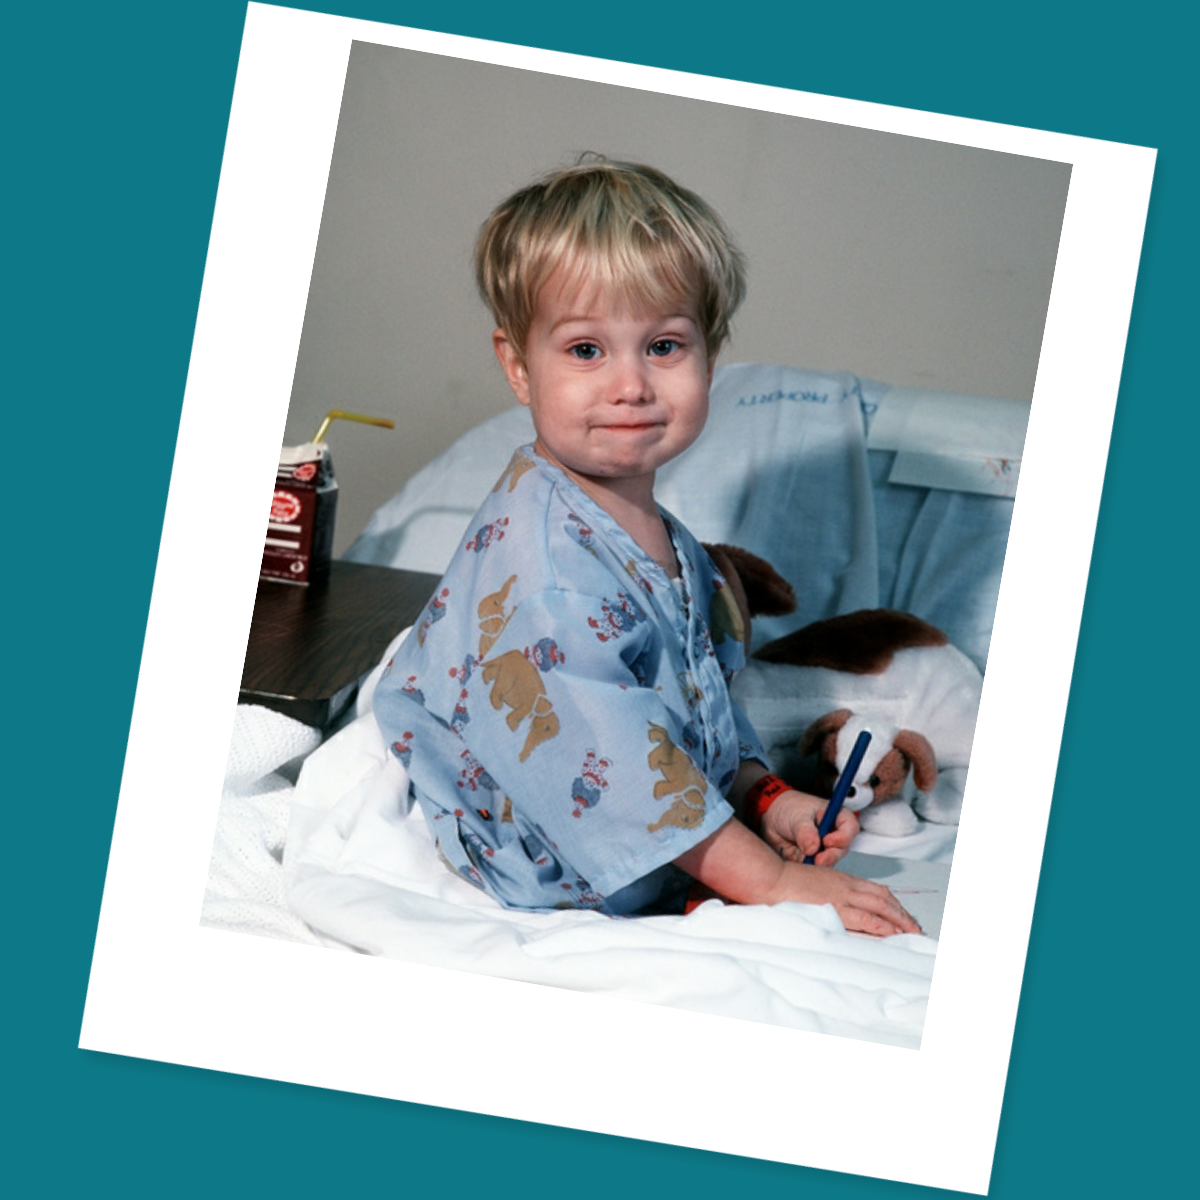 Little boy in hospital bed